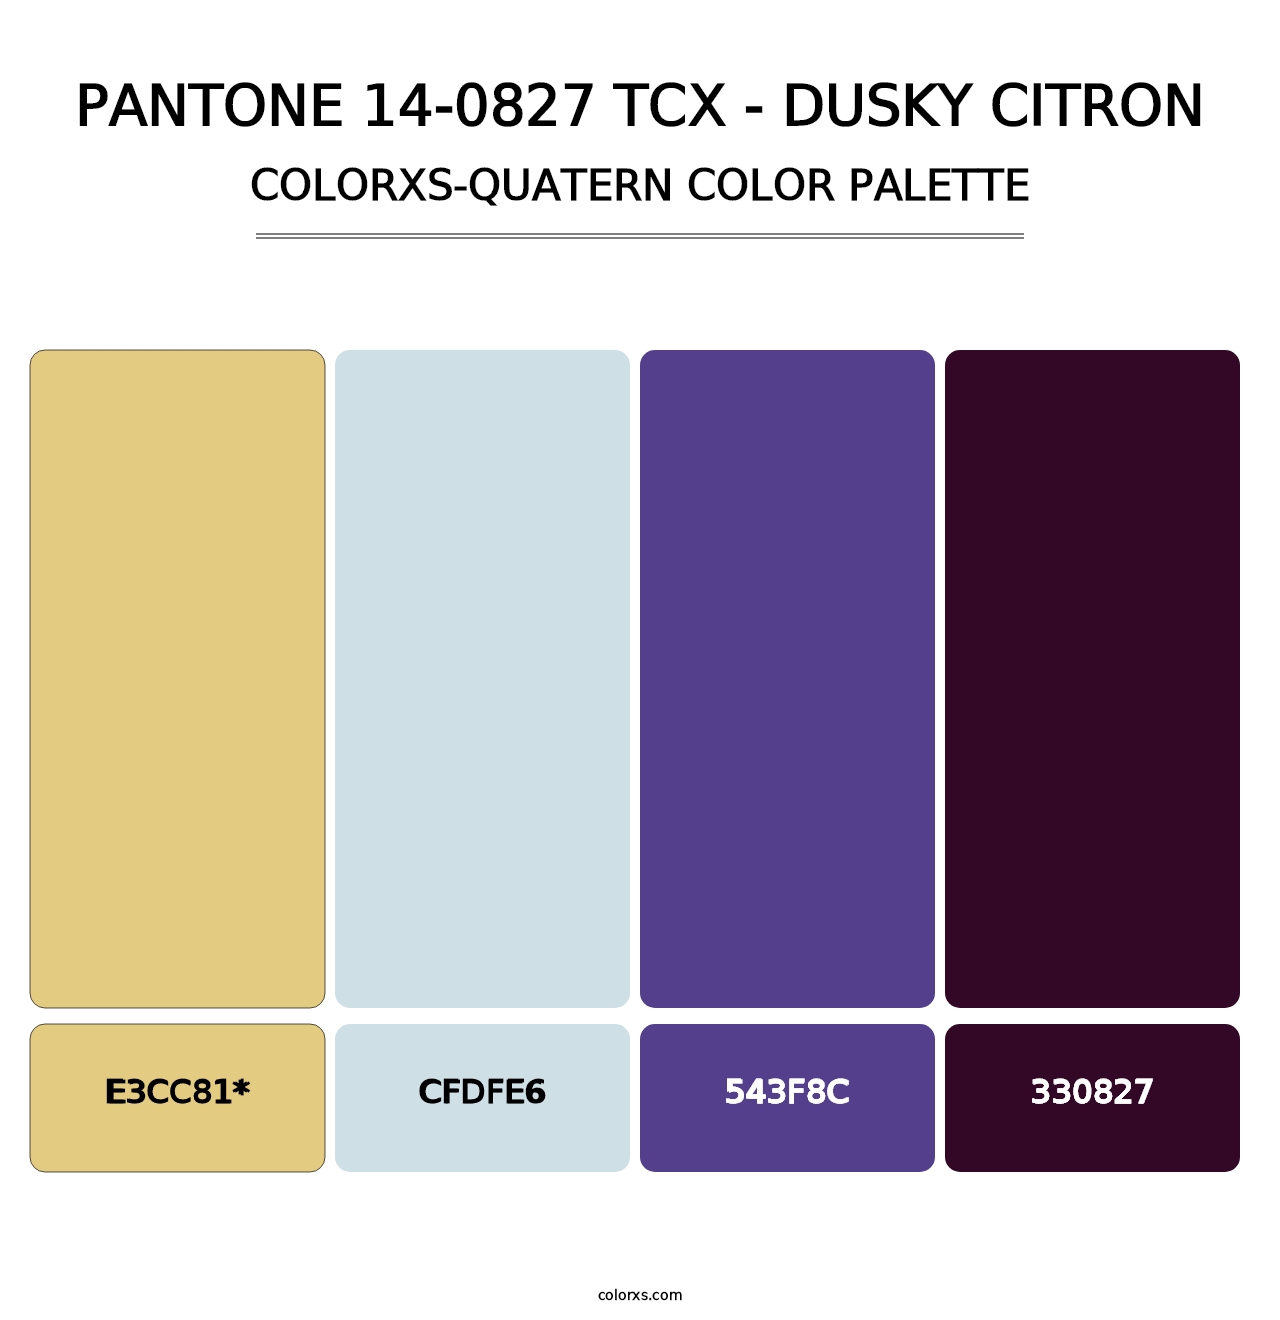 PANTONE 14-0827 TCX - Dusky Citron - Colorxs Quatern Palette